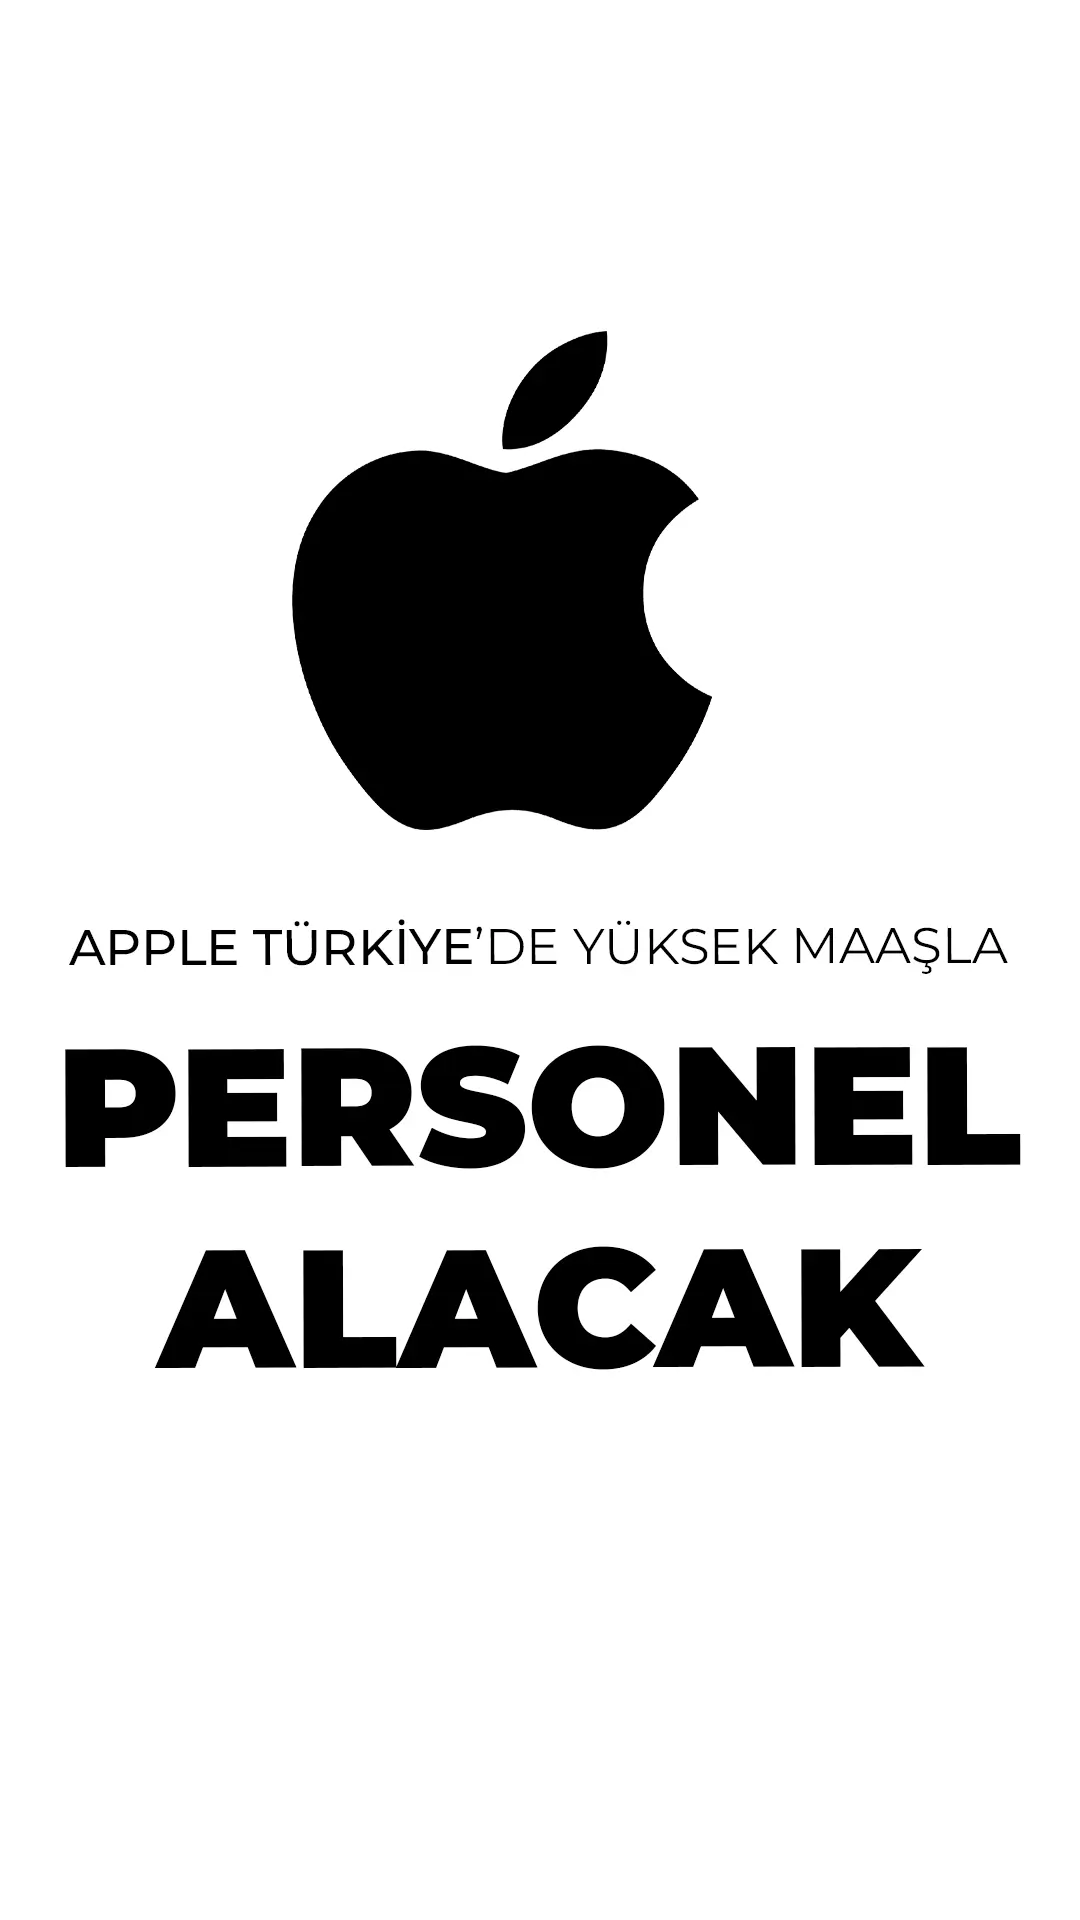 Apple Türkiye, çeşitli pozisyonlar için yeni iş ilanları yayınladı. Personel alımına dair tüm detaylar bu haberimizde...